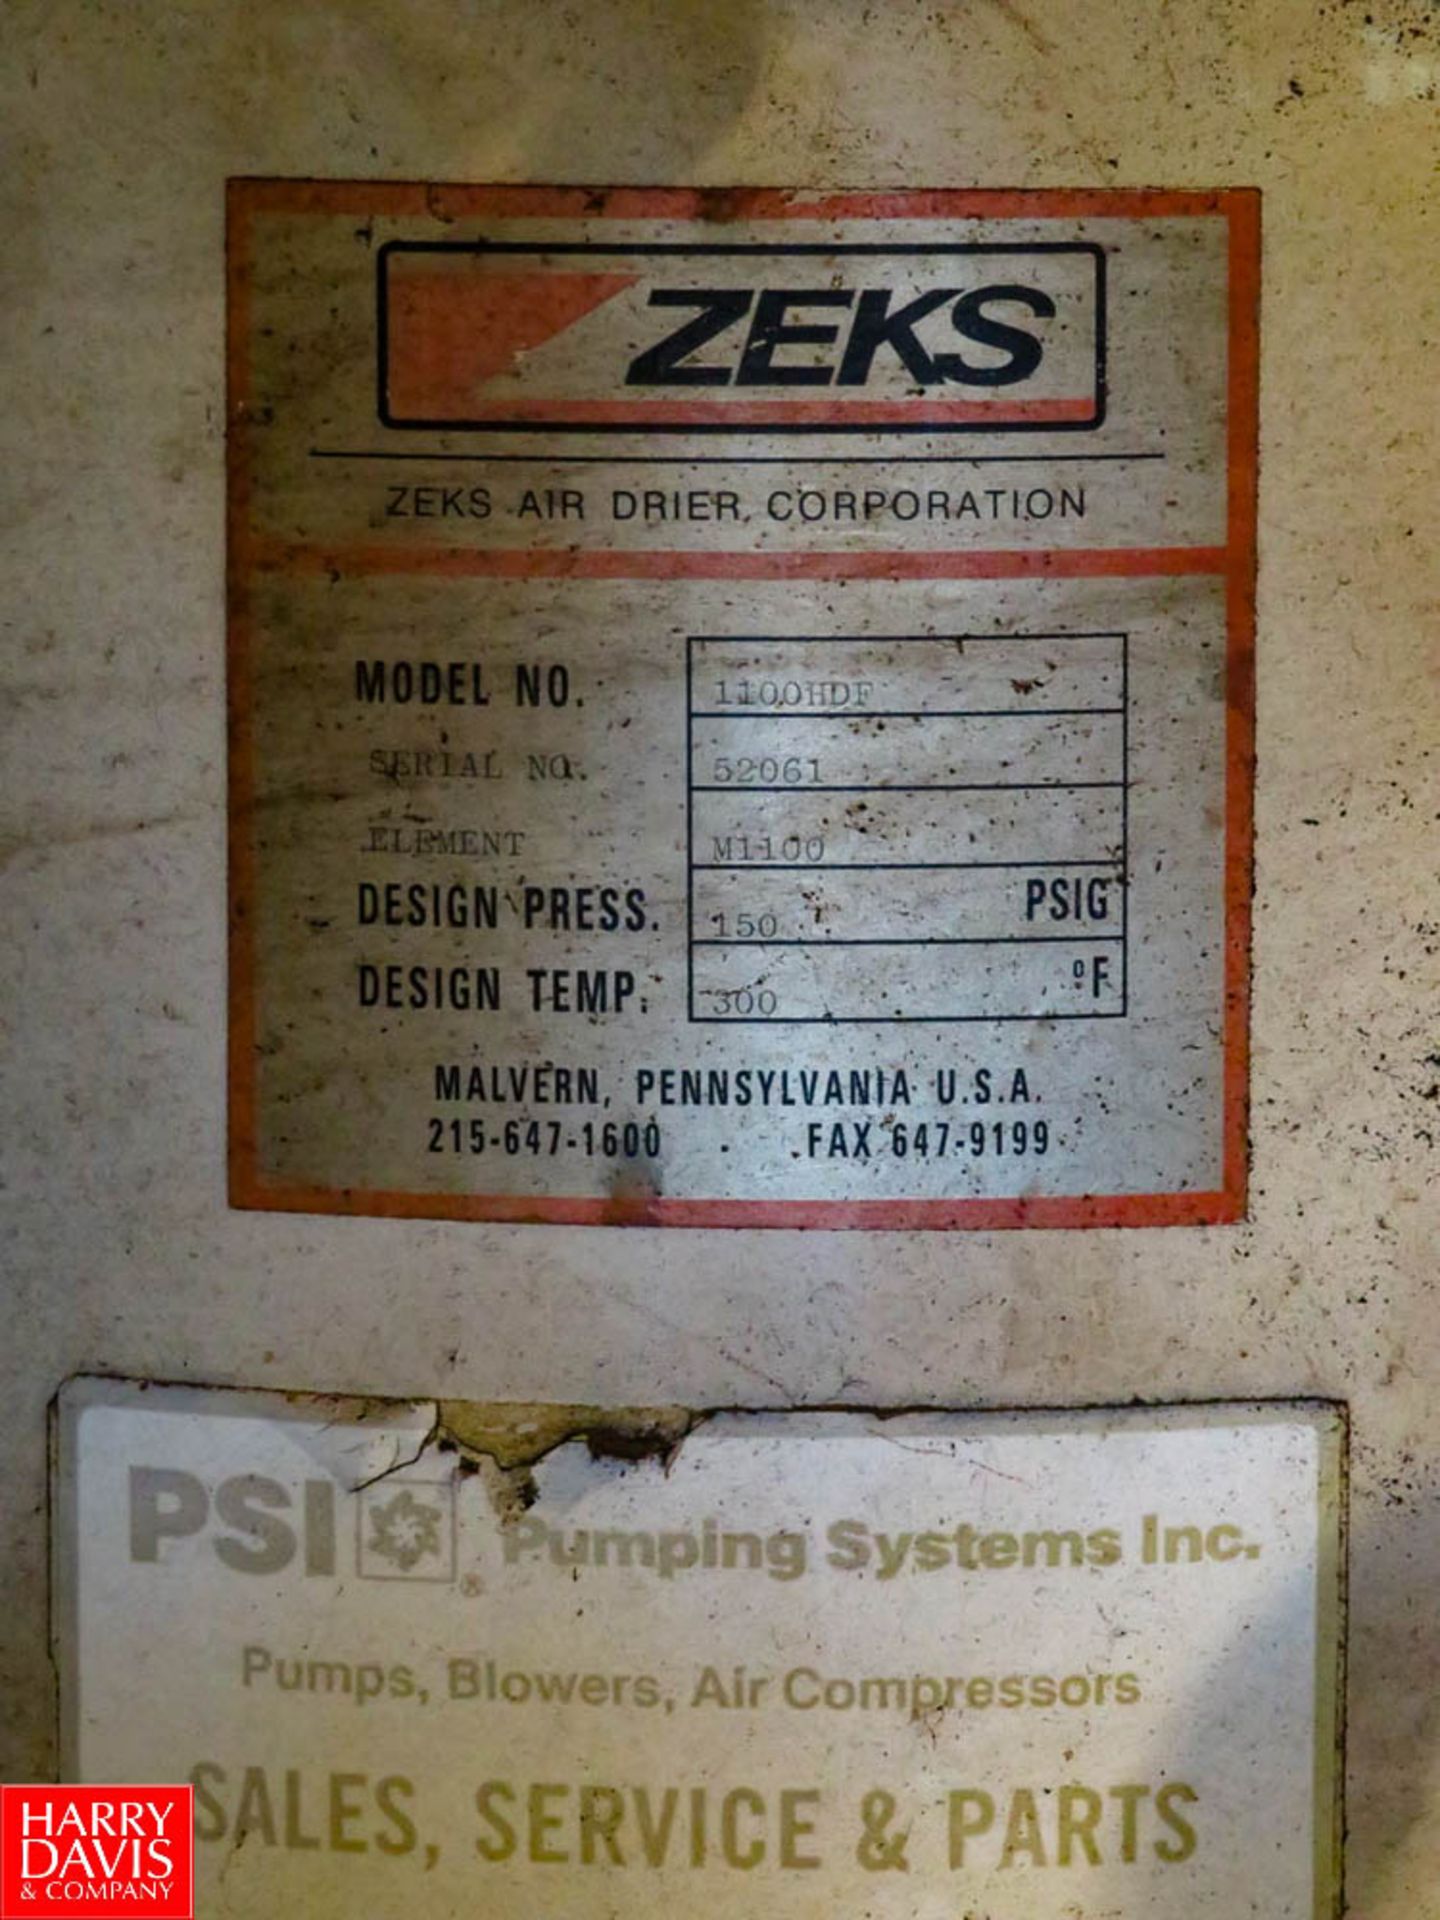 ZEKS Air Dryer Model 100HDF Rigging Fee: $80 - Image 2 of 2